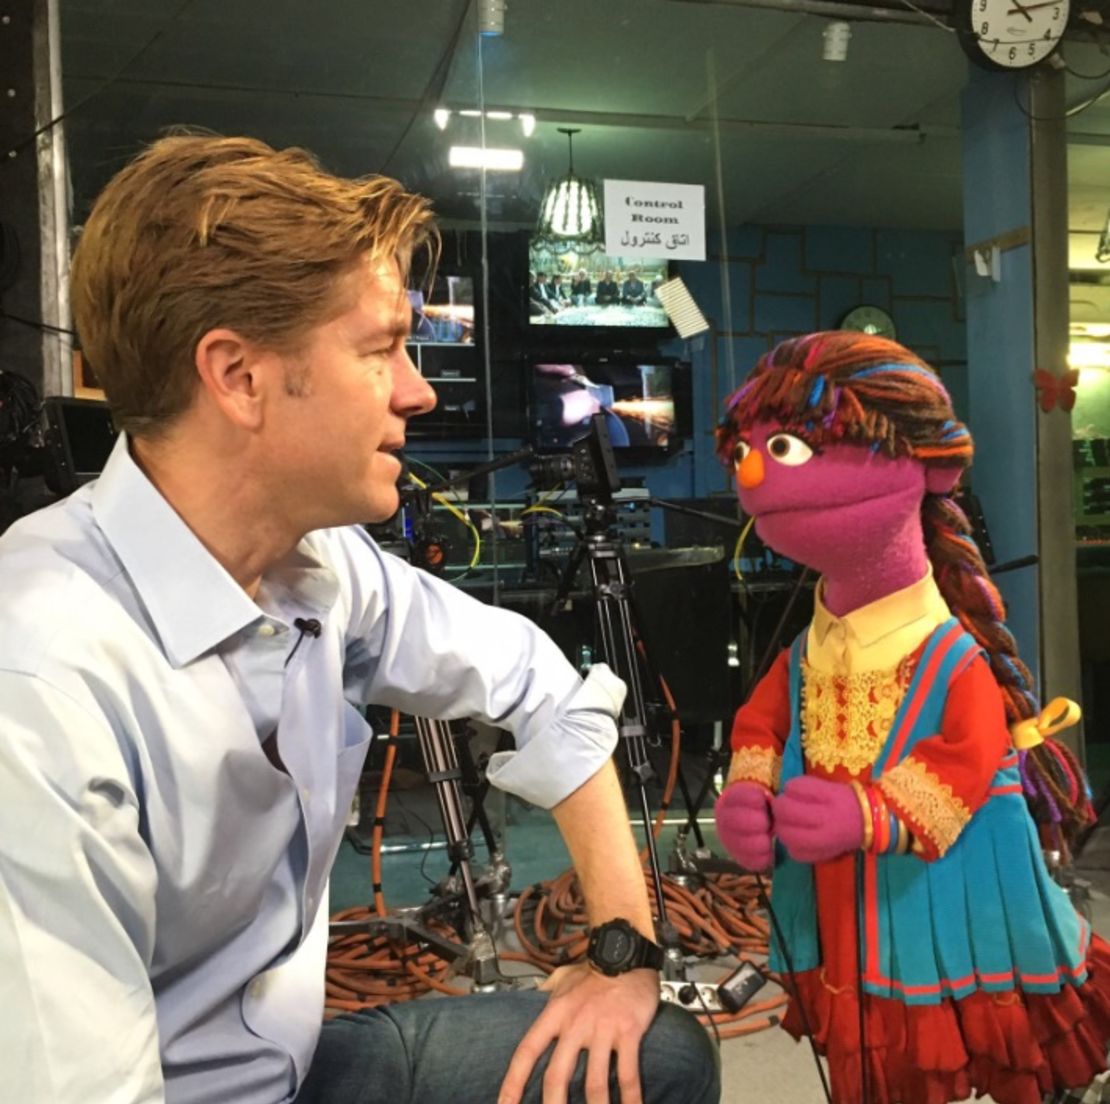 CNN's Ivan Watson talks with a Muppet.